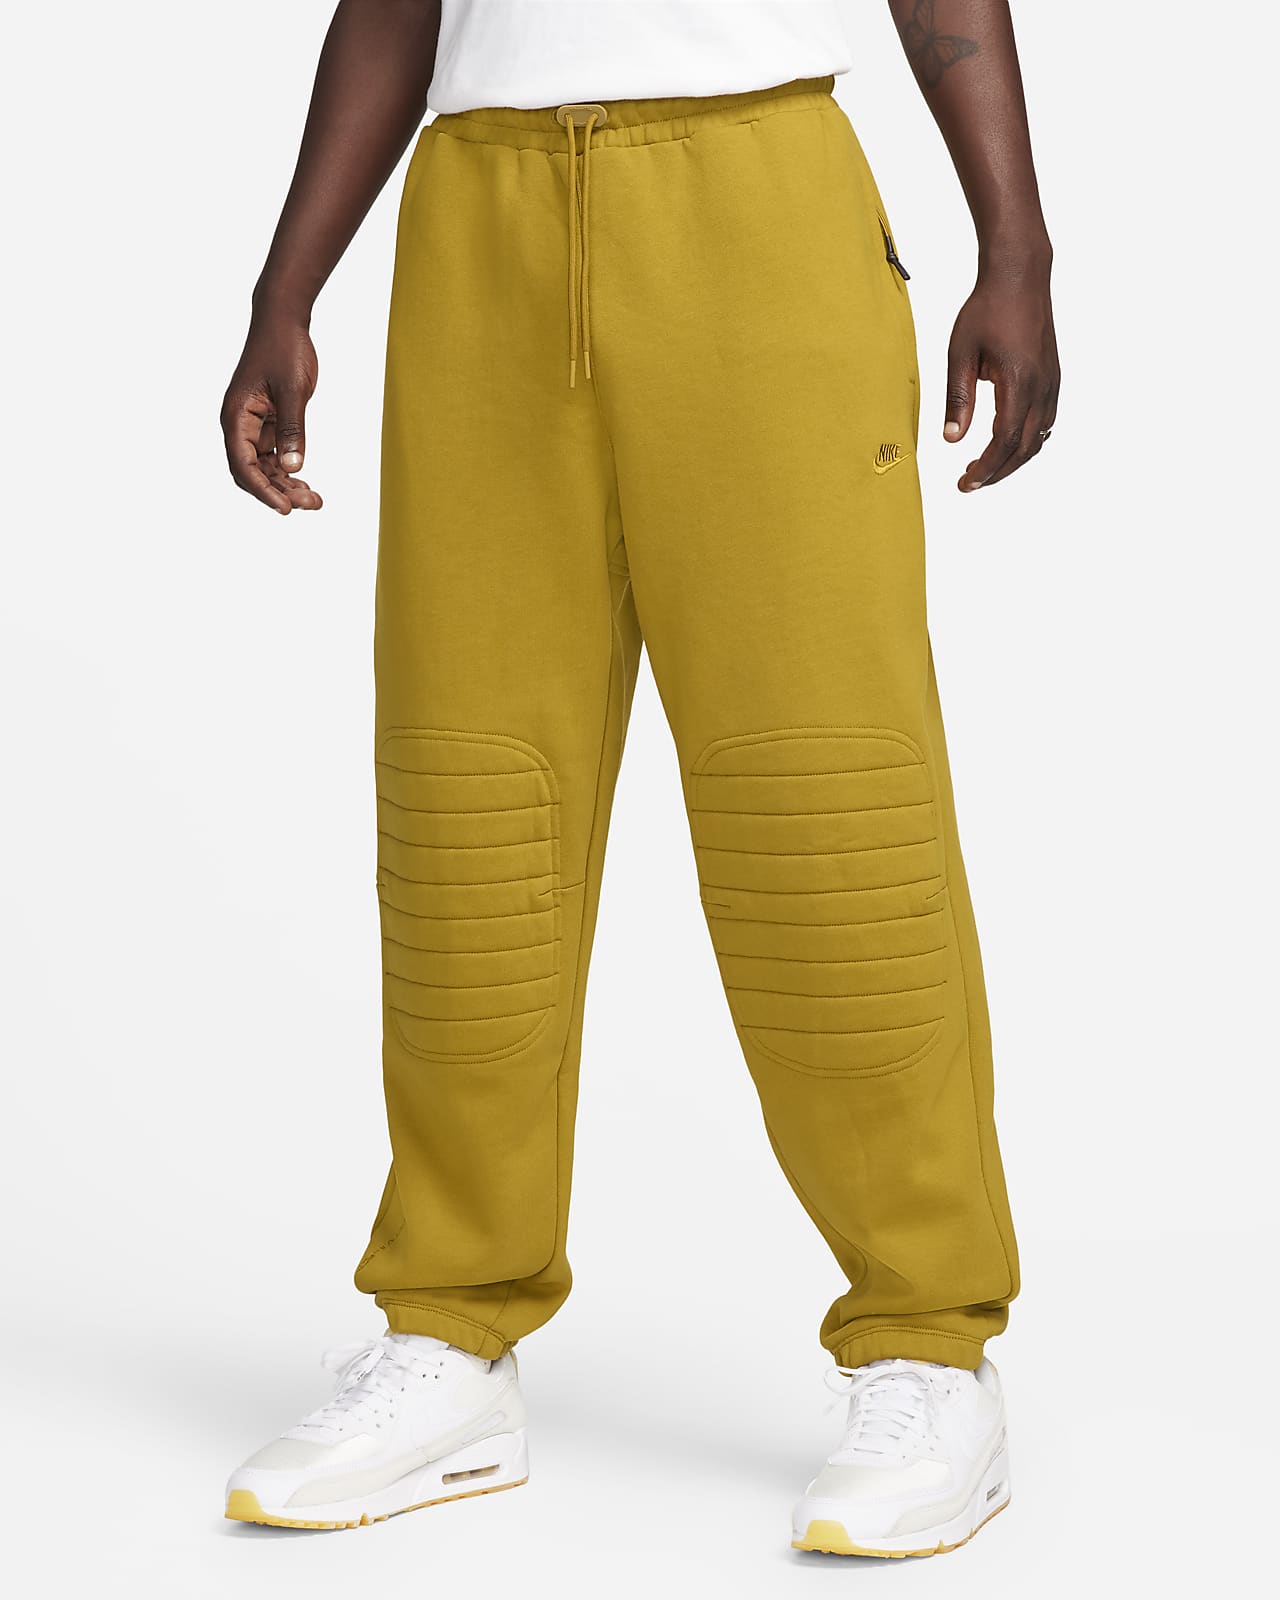 Nike Sportswear Therma-FIT Tech Pack Men's Repel Winterized Pants